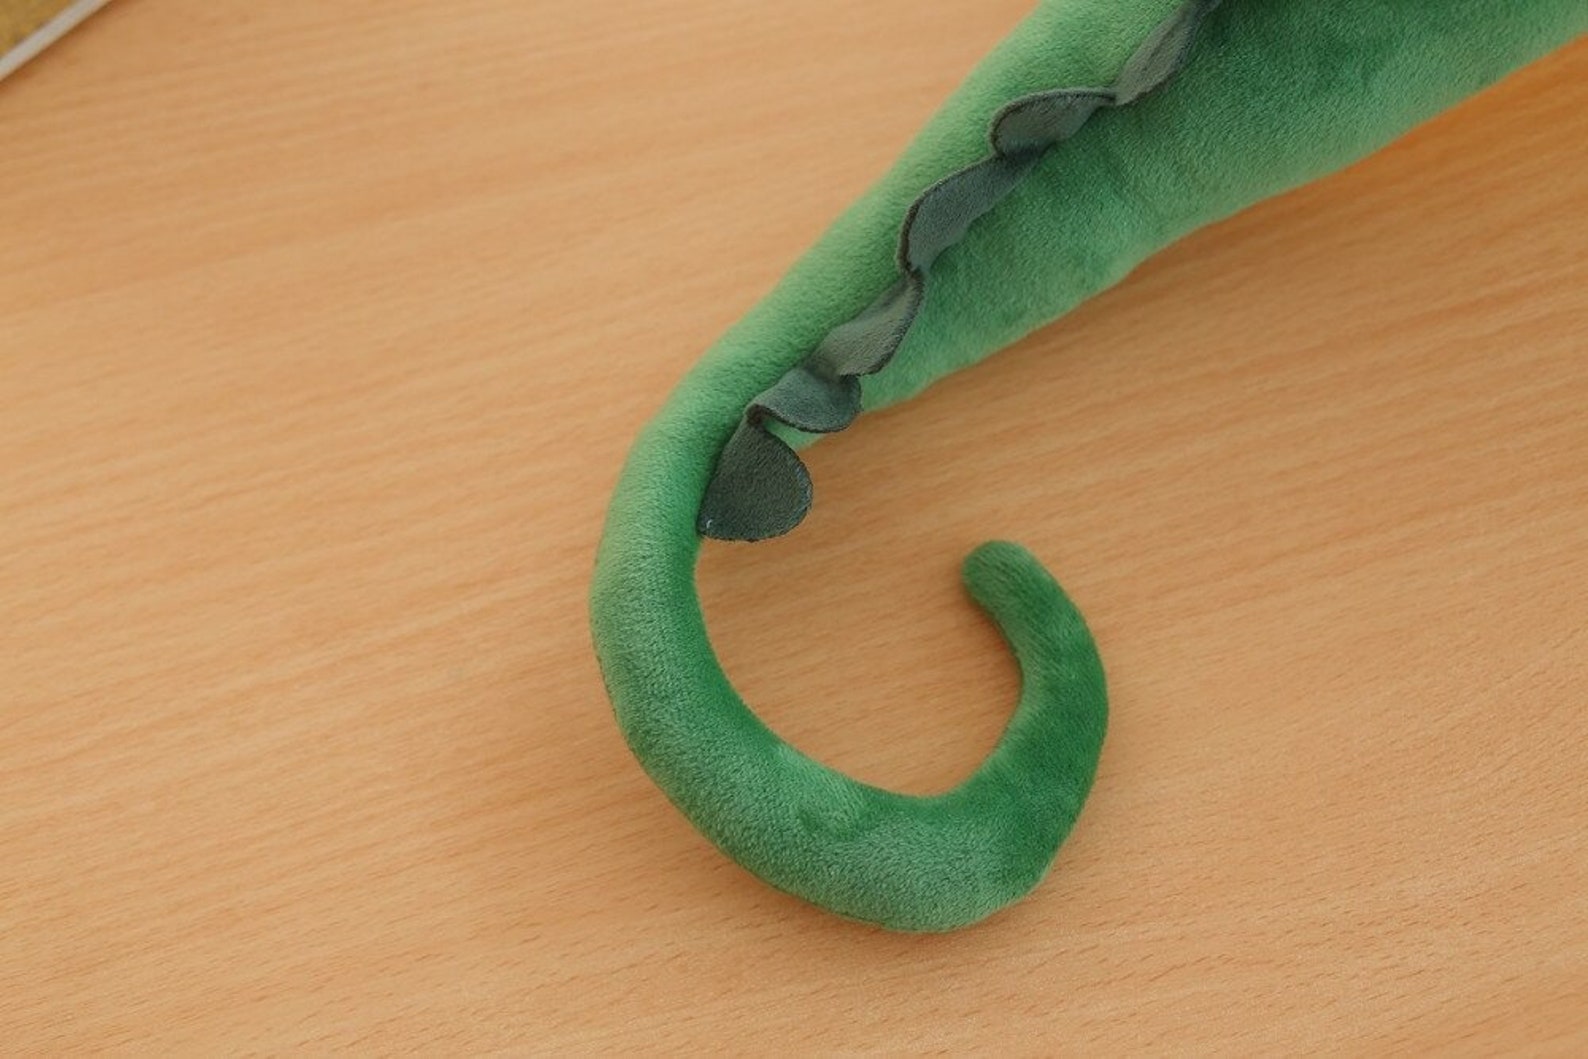 Chameleon Toy Chameleon Plush Lizard Toy Soft Toy Stuffed | Etsy